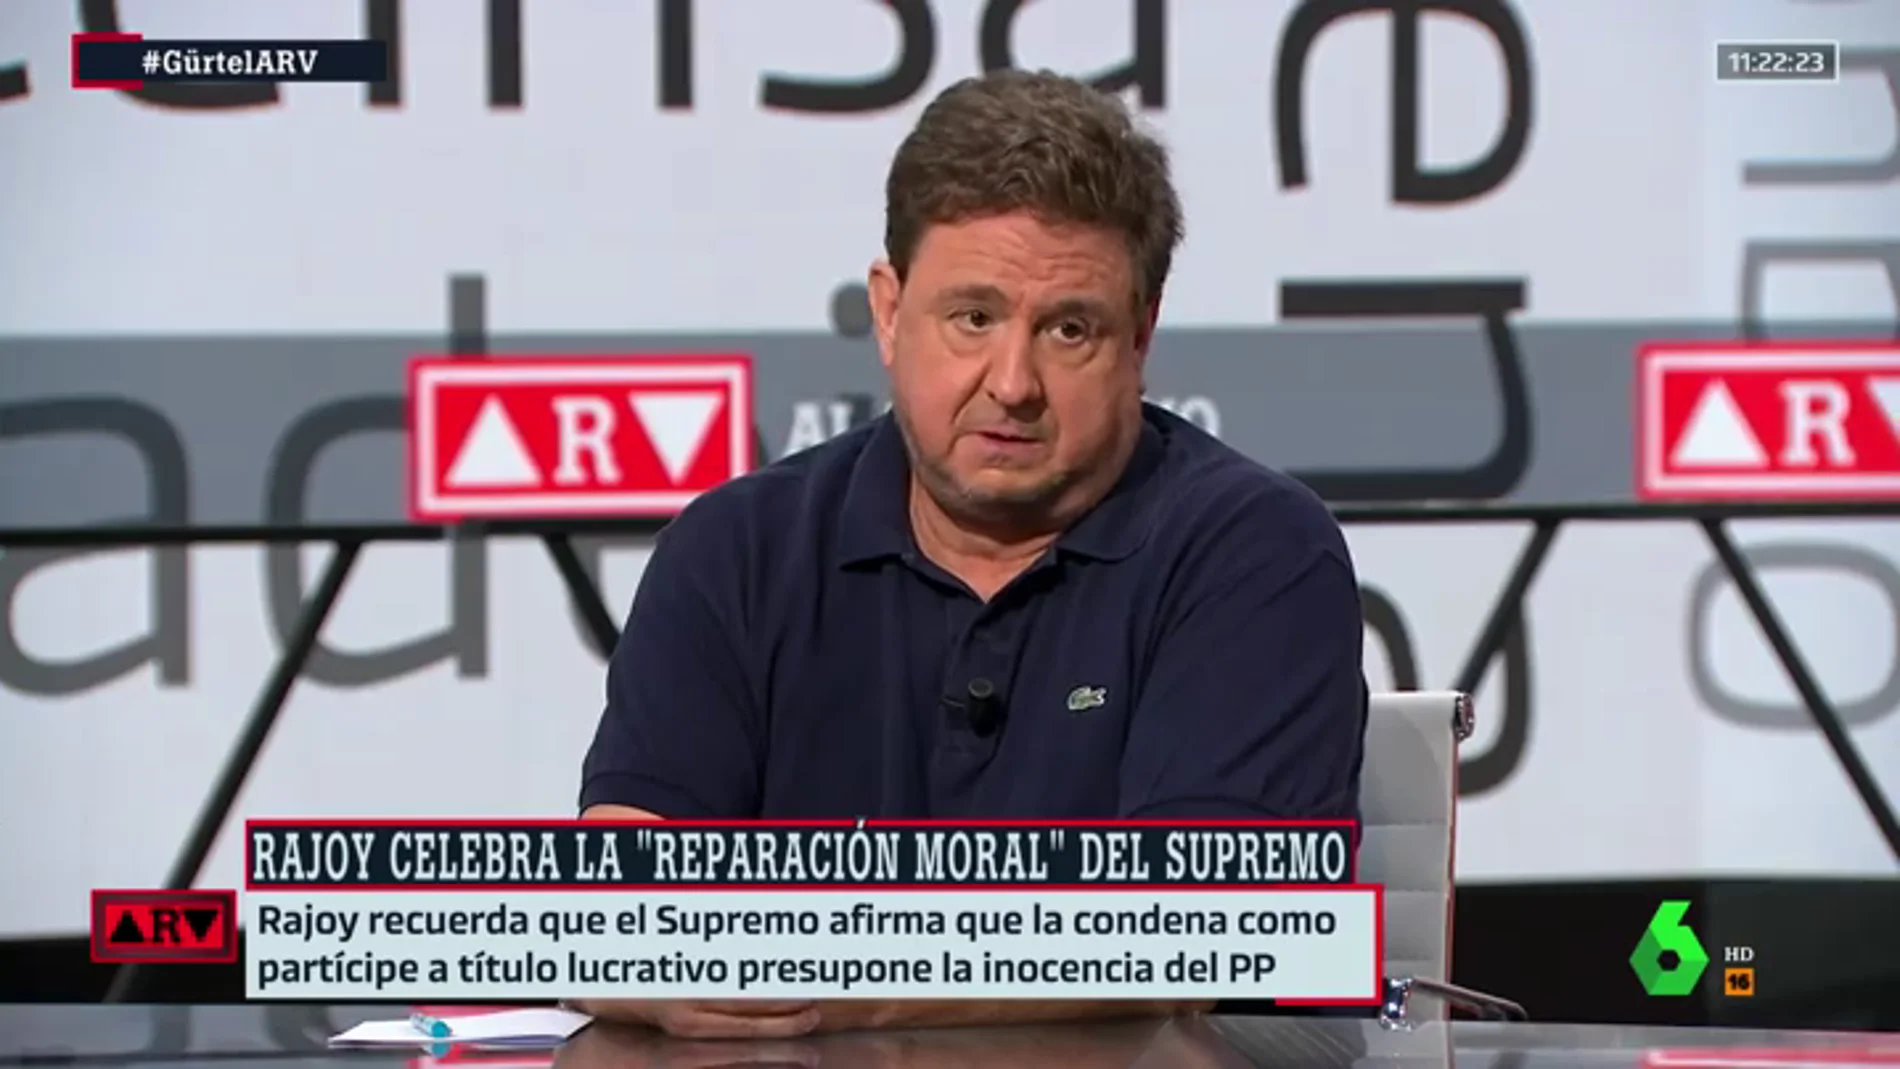 José Luis Peñas, sorprendido ante el comunicado de Rajoy: "Están instalados en la mentira"